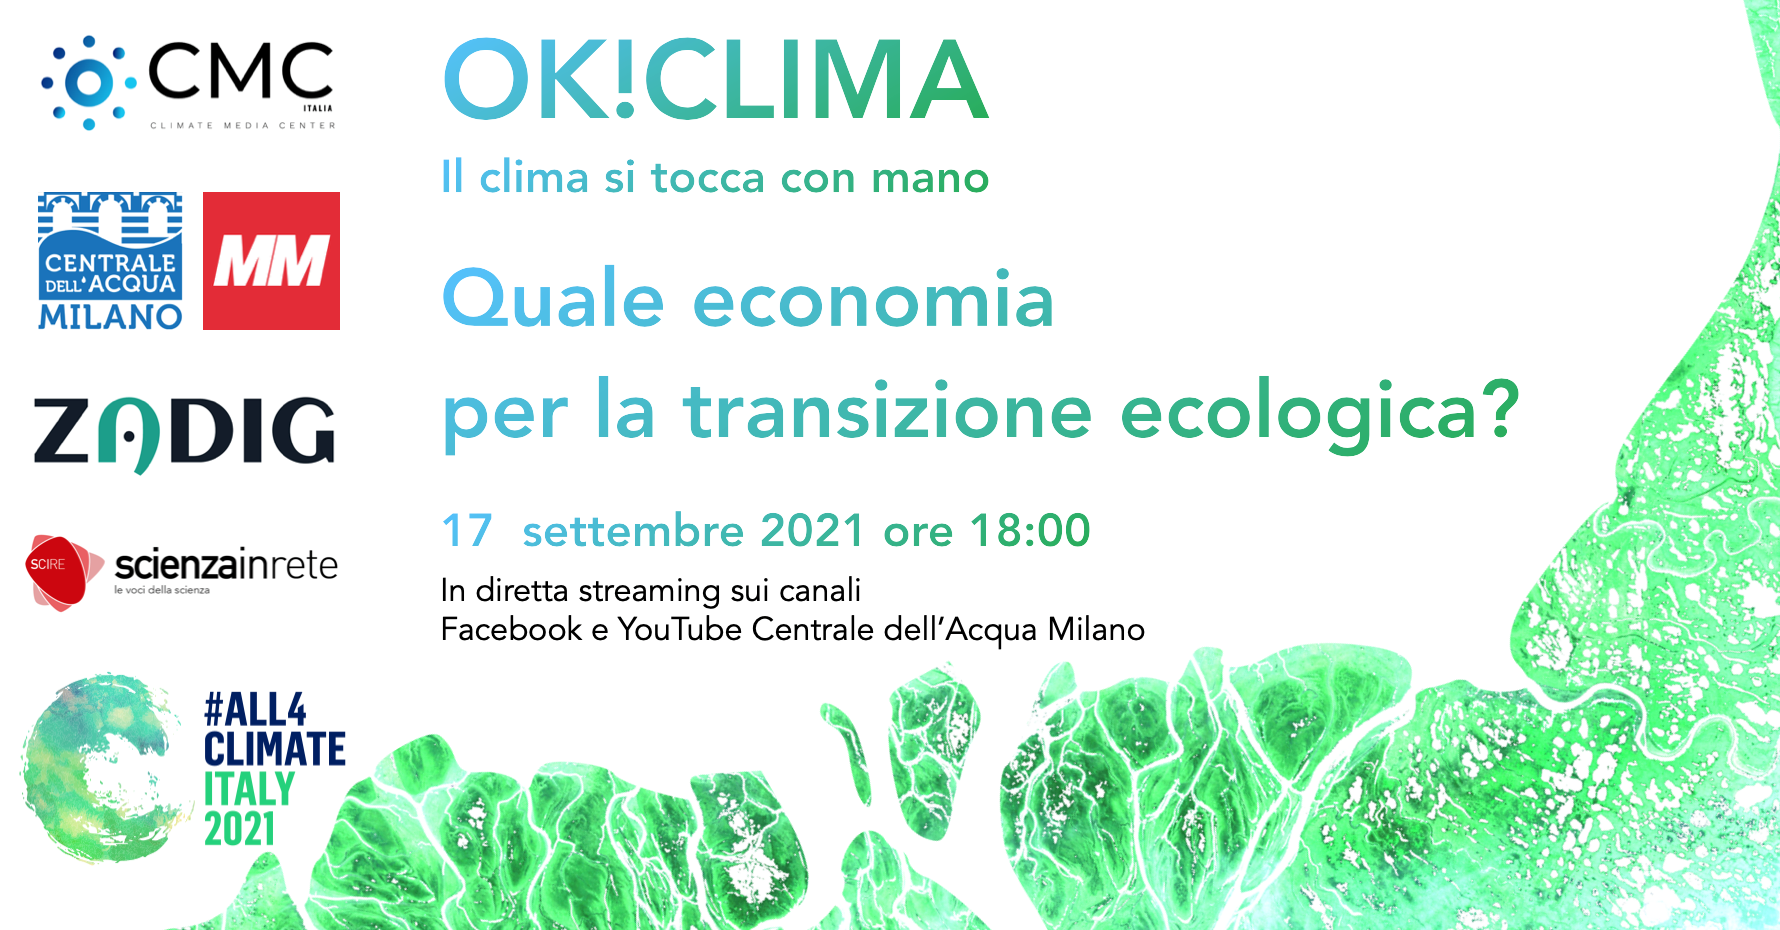 OK!CLIMA - Il clima si tocca con mano #3 "Quale economia per la transizione ecologica?"